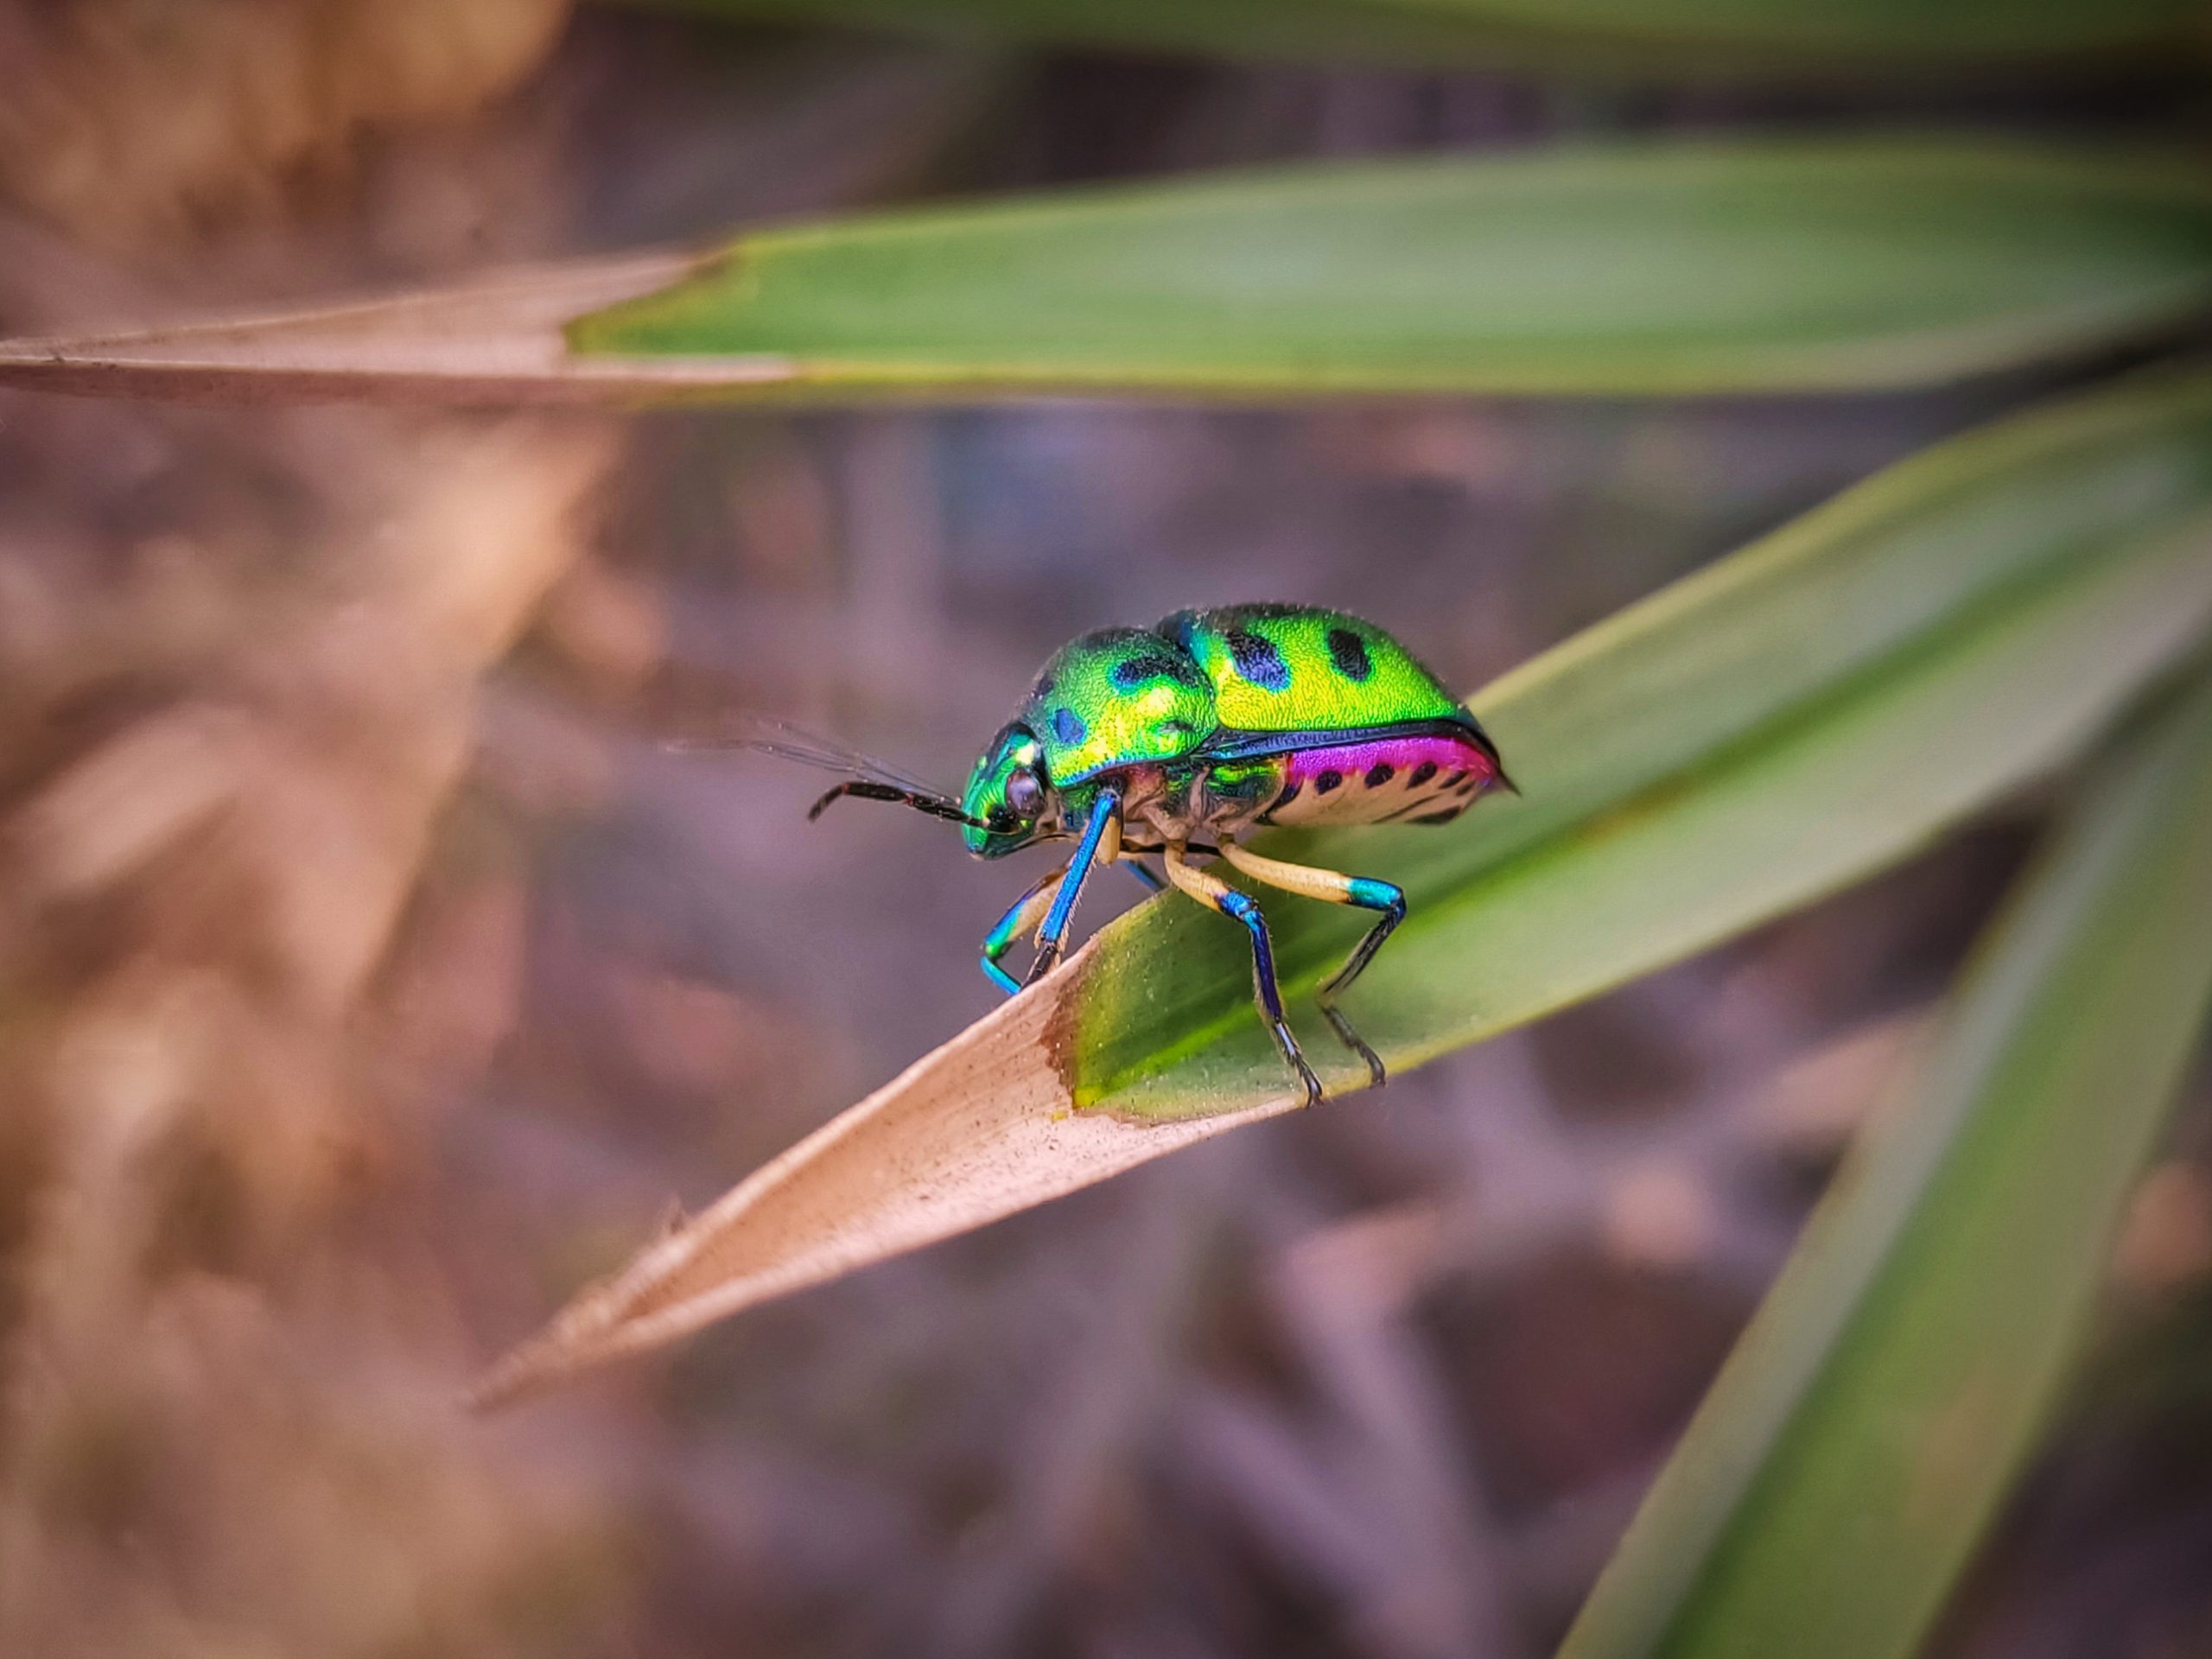 A bug on a grass leaf